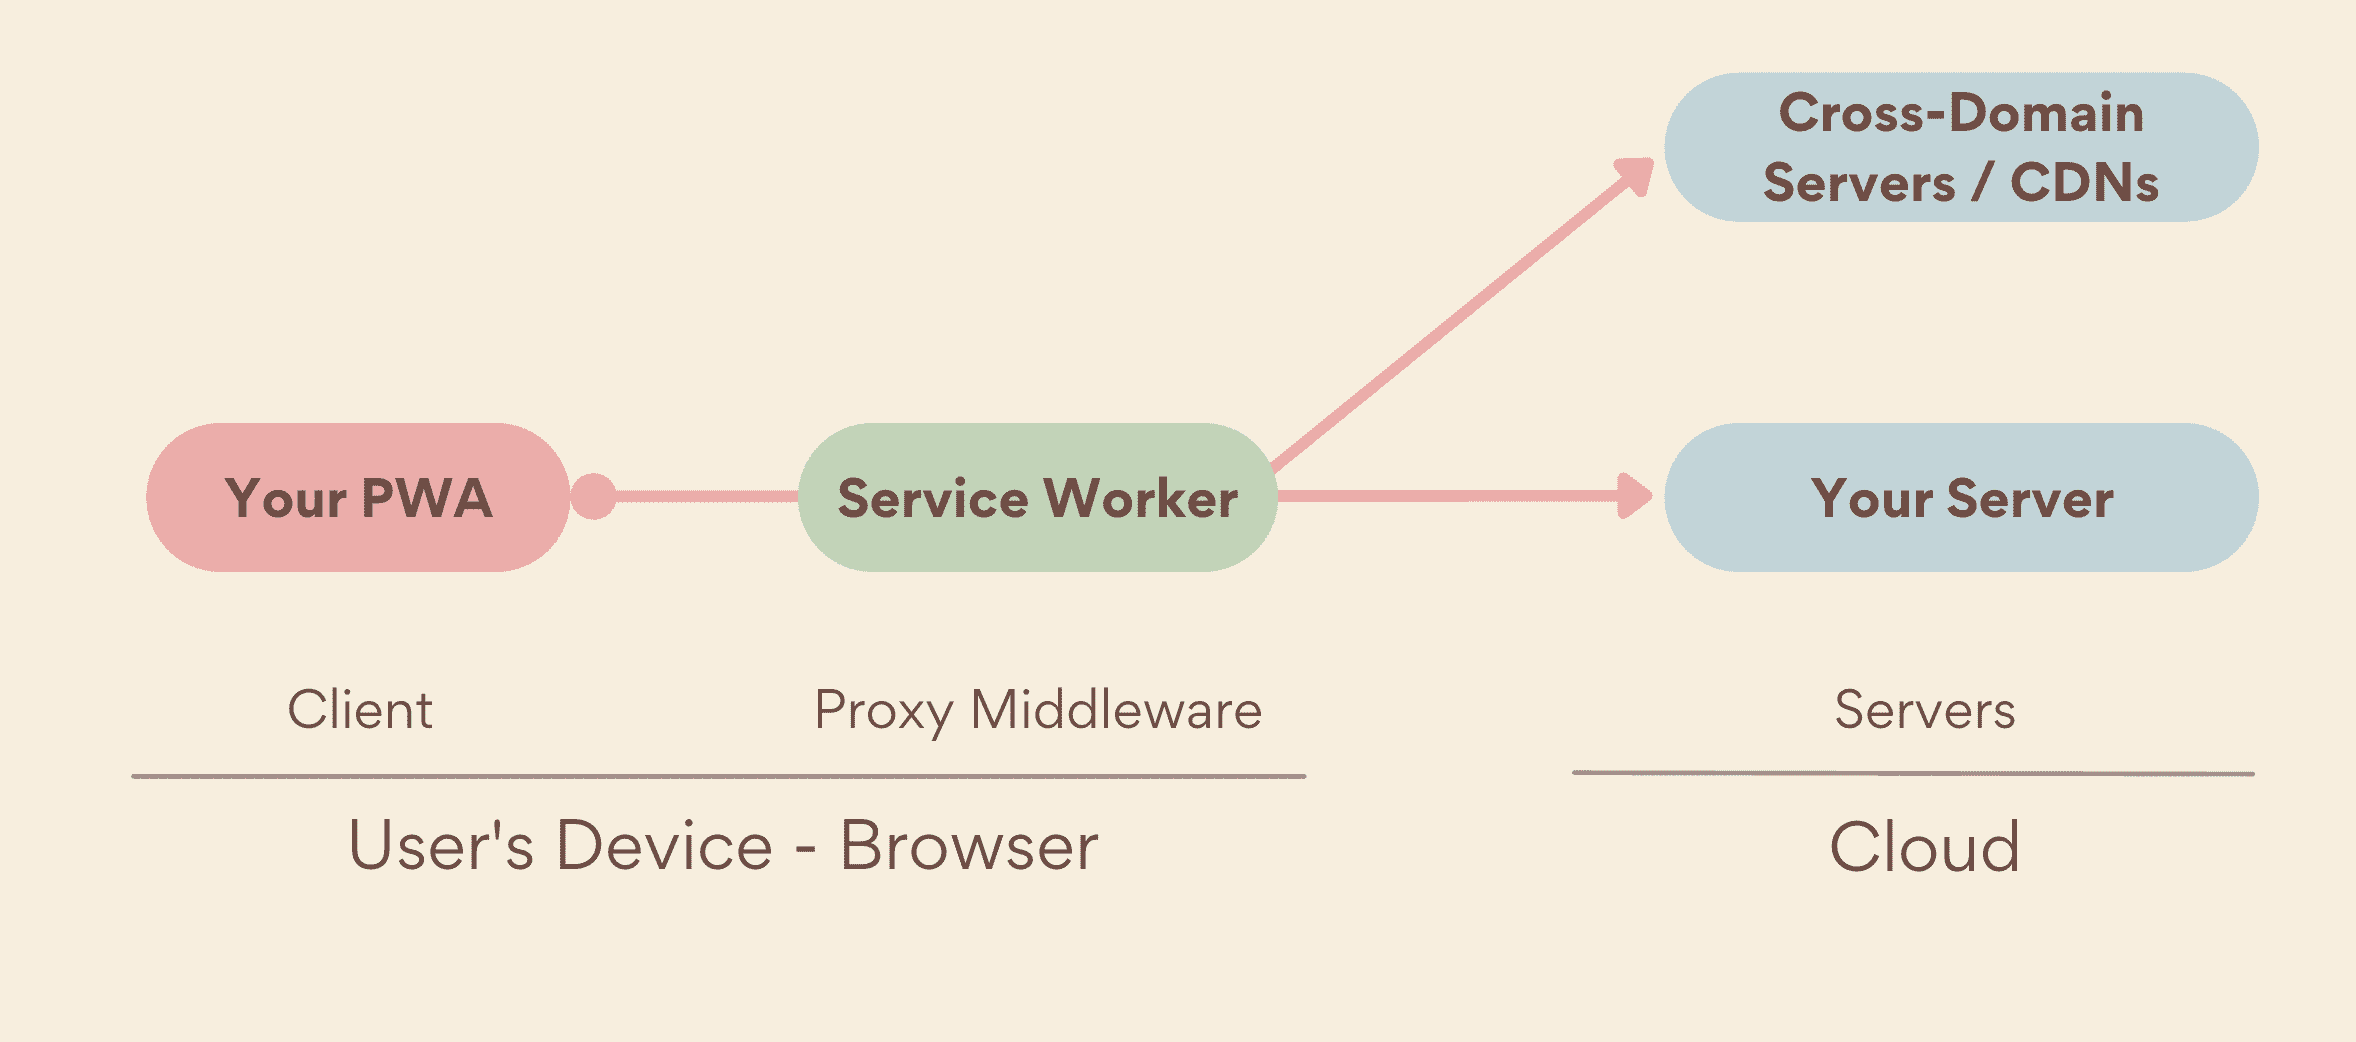 یک سرویس‌کار به‌عنوان یک پروکسی میان‌افزار، که در سمت دستگاه، بین PWA و سرورهای شما اجرا می‌شود، که شامل سرورهای خود و سرورهای متقابل دامنه است.